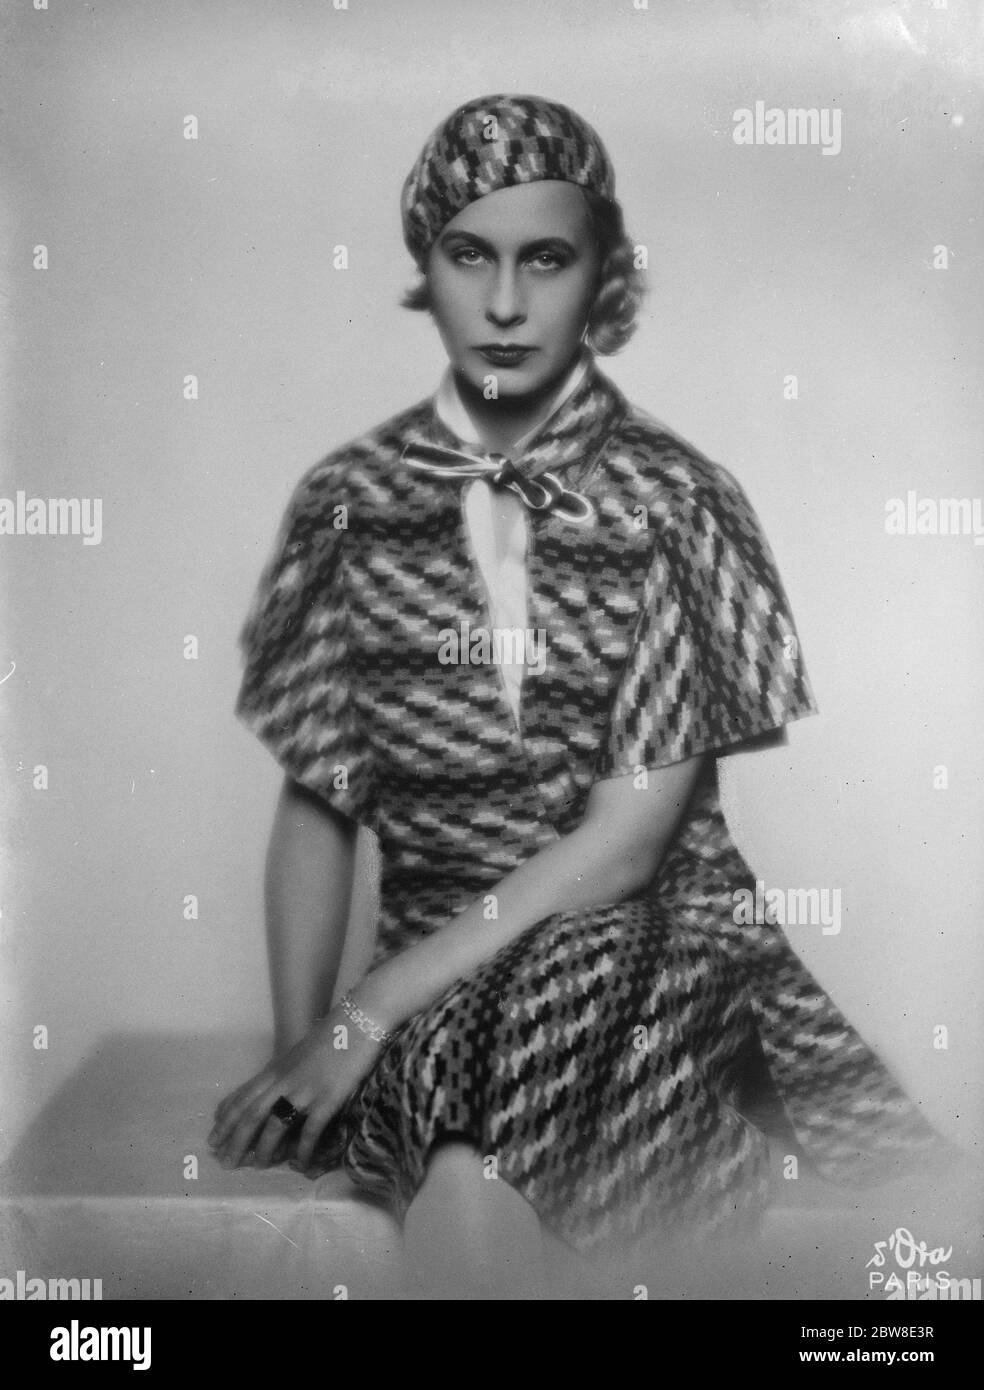 Jetzt mit einem der berühmtesten Schneiderinnen der Welt verbunden. Lady Abdy , die vor kurzem eine Position bei Mlle Gabrielle Chanel aufgenommen hat . 19 Dezember 1929 Stockfoto